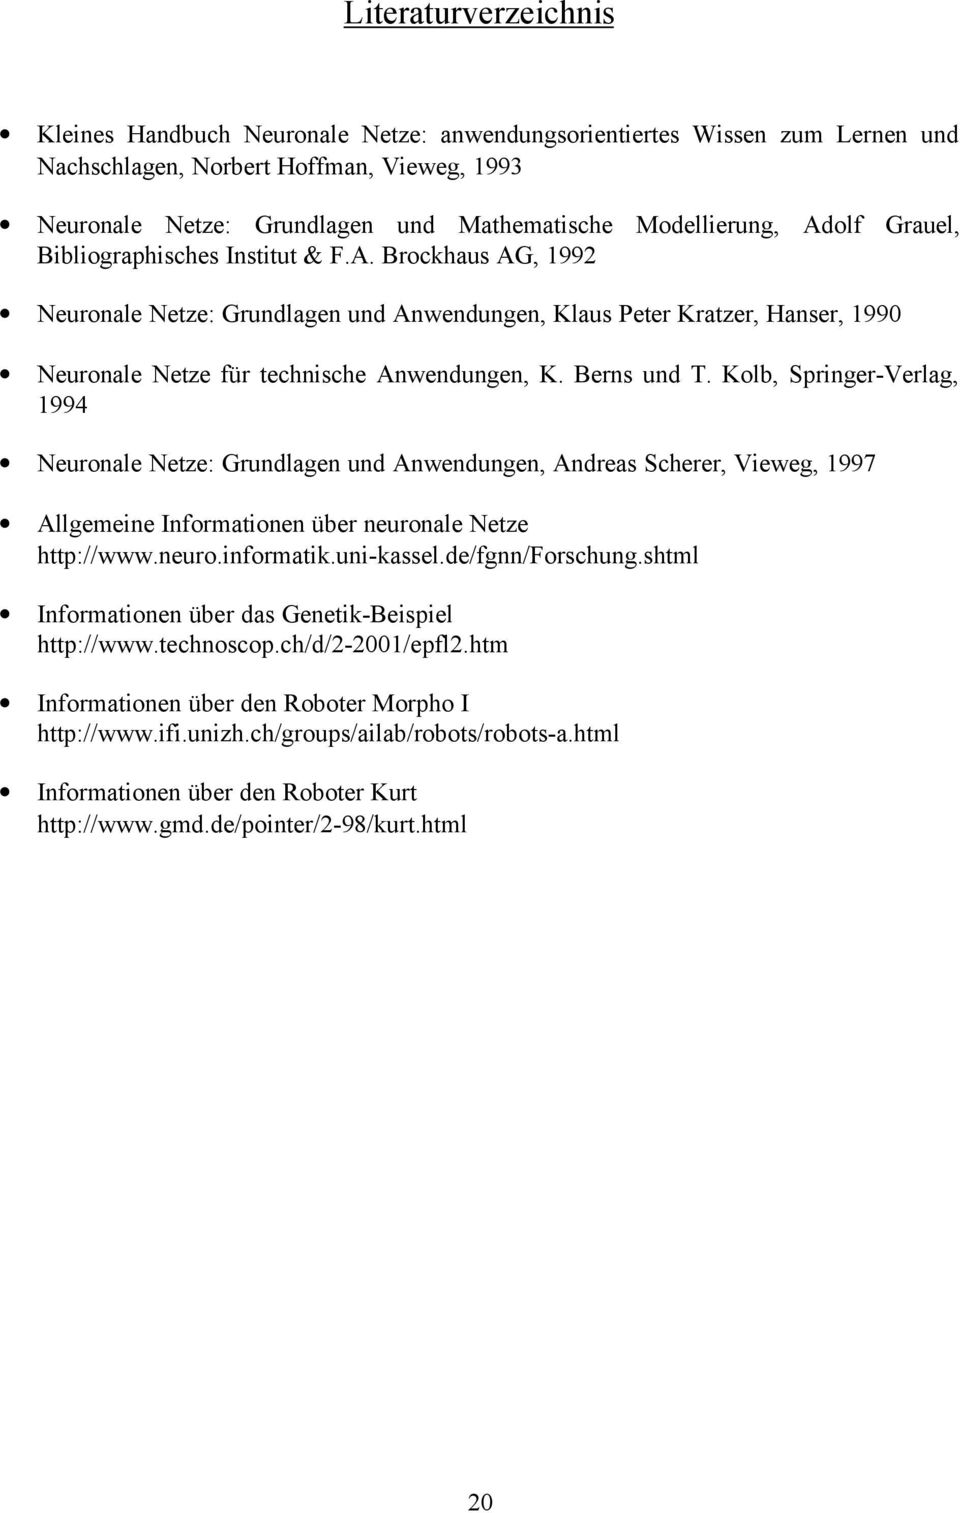 Berns und T. Kolb, Springer-Verlag, 1994 Neuronale Netze: Grundlagen und Anwendungen, Andreas Scherer, Vieweg, 1997 Allgemeine Informationen über neuronale Netze http://www.neuro.informatik.